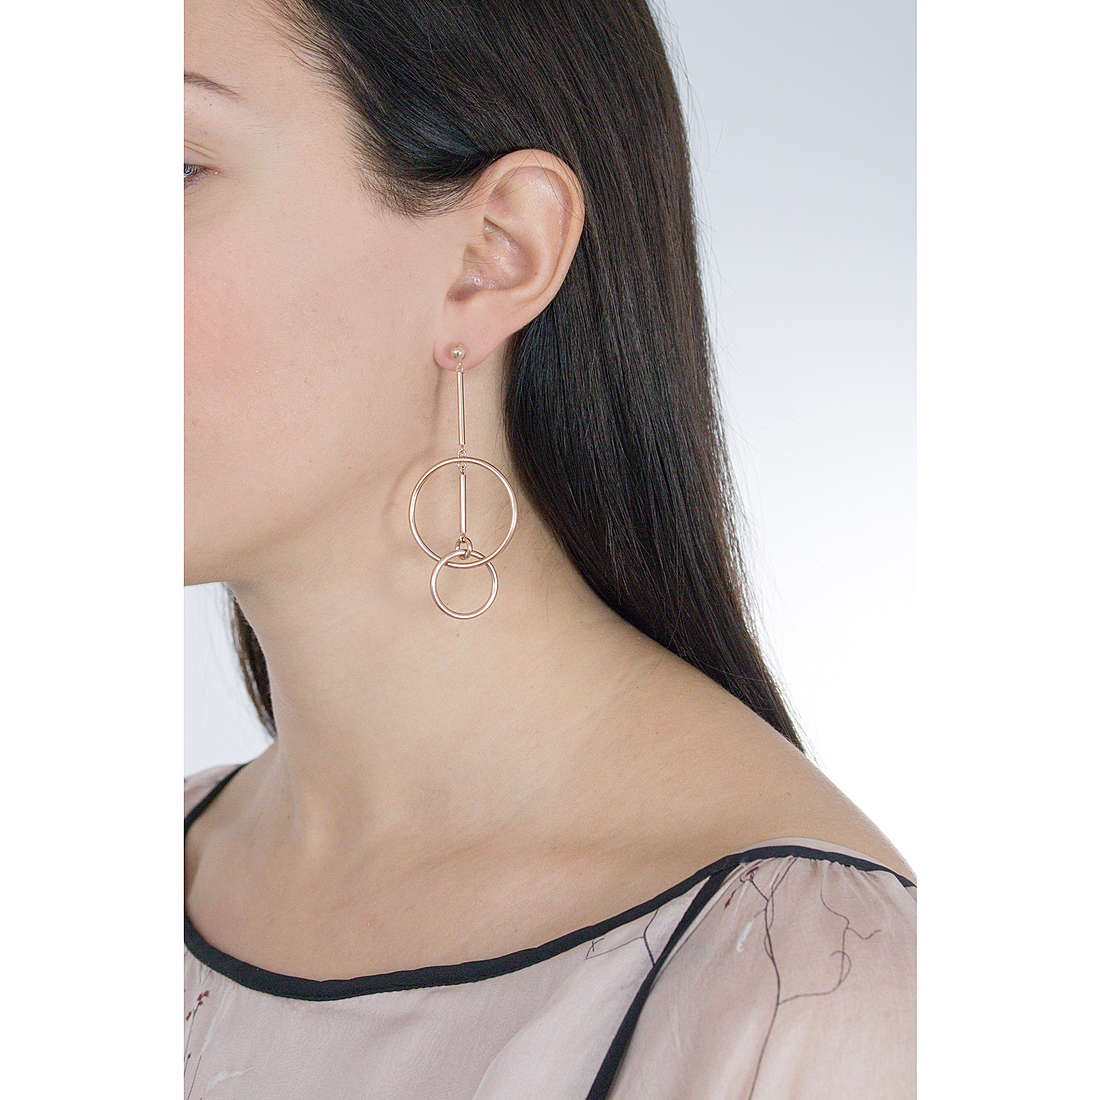 Morellato earrings Cerchi woman SAKM13 wearing